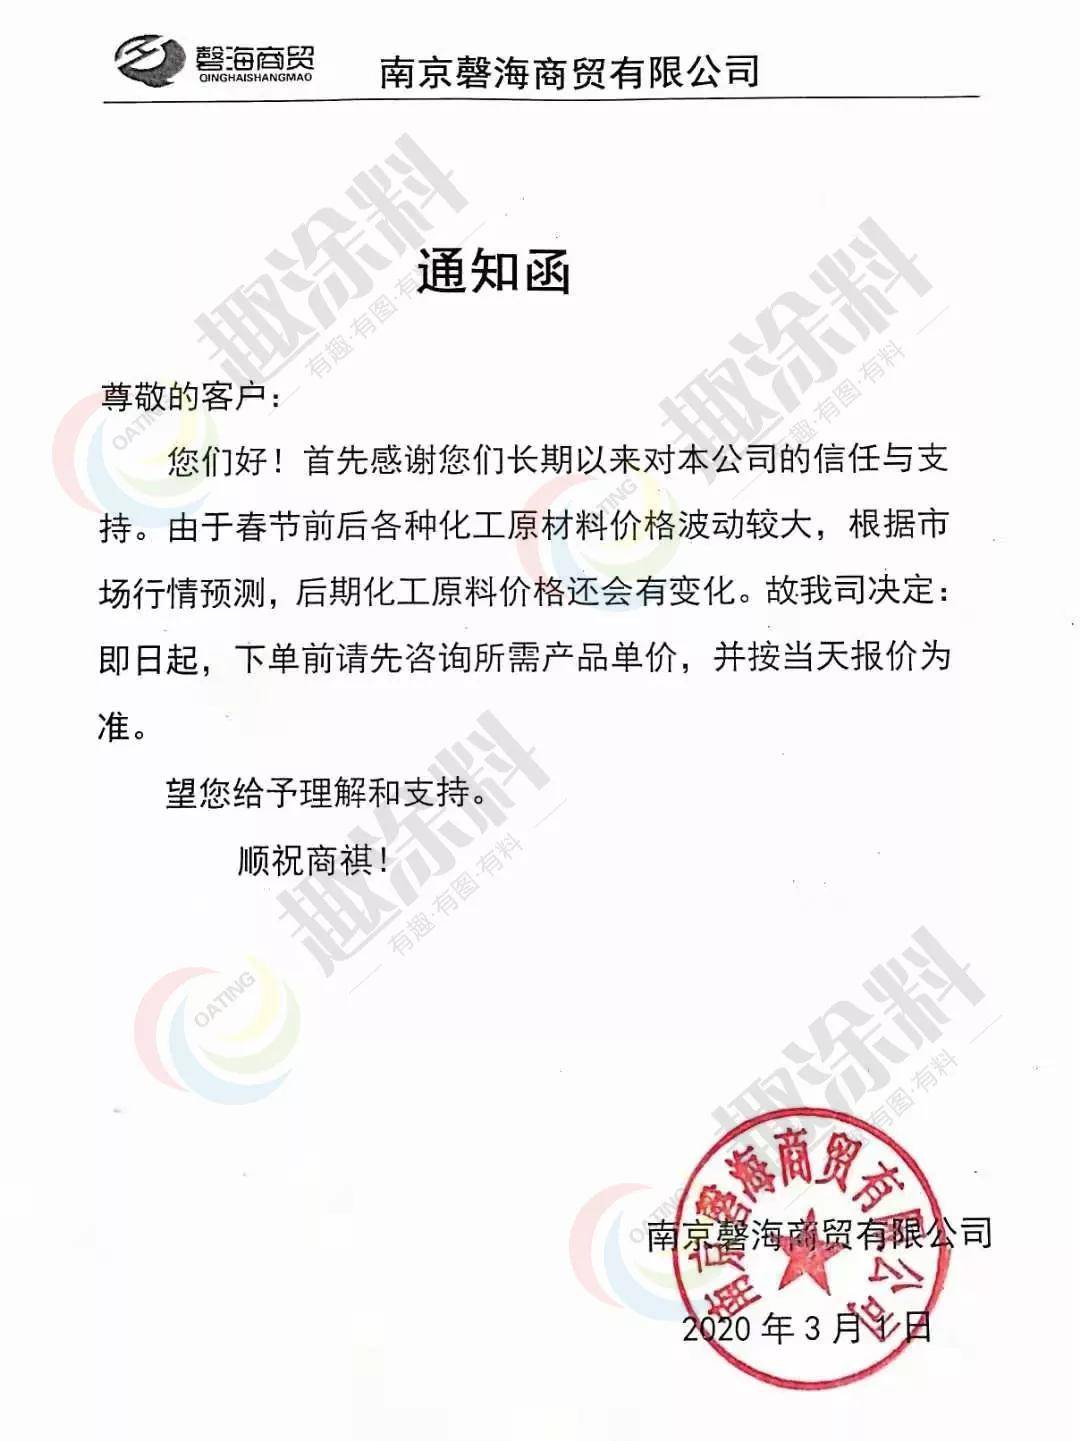 2月22日,广州市天脉新材料科技有限公司对外发布调价通知函:由于近期